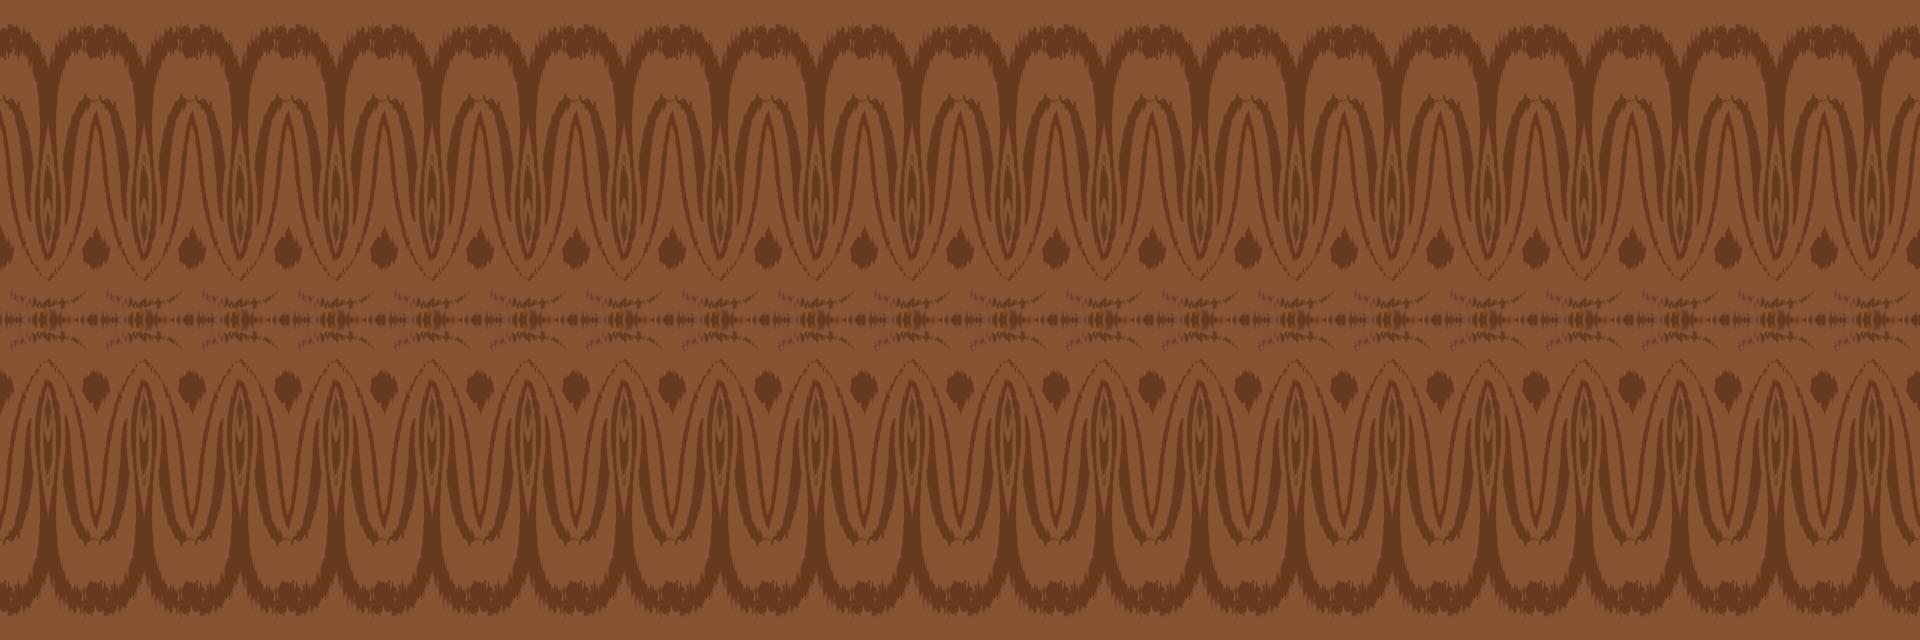 batik textil ikkat o ikat rayas diseño vectorial digital de patrones sin fisuras para imprimir saree kurti borneo borde de tela símbolos de pincel muestras de algodón vector